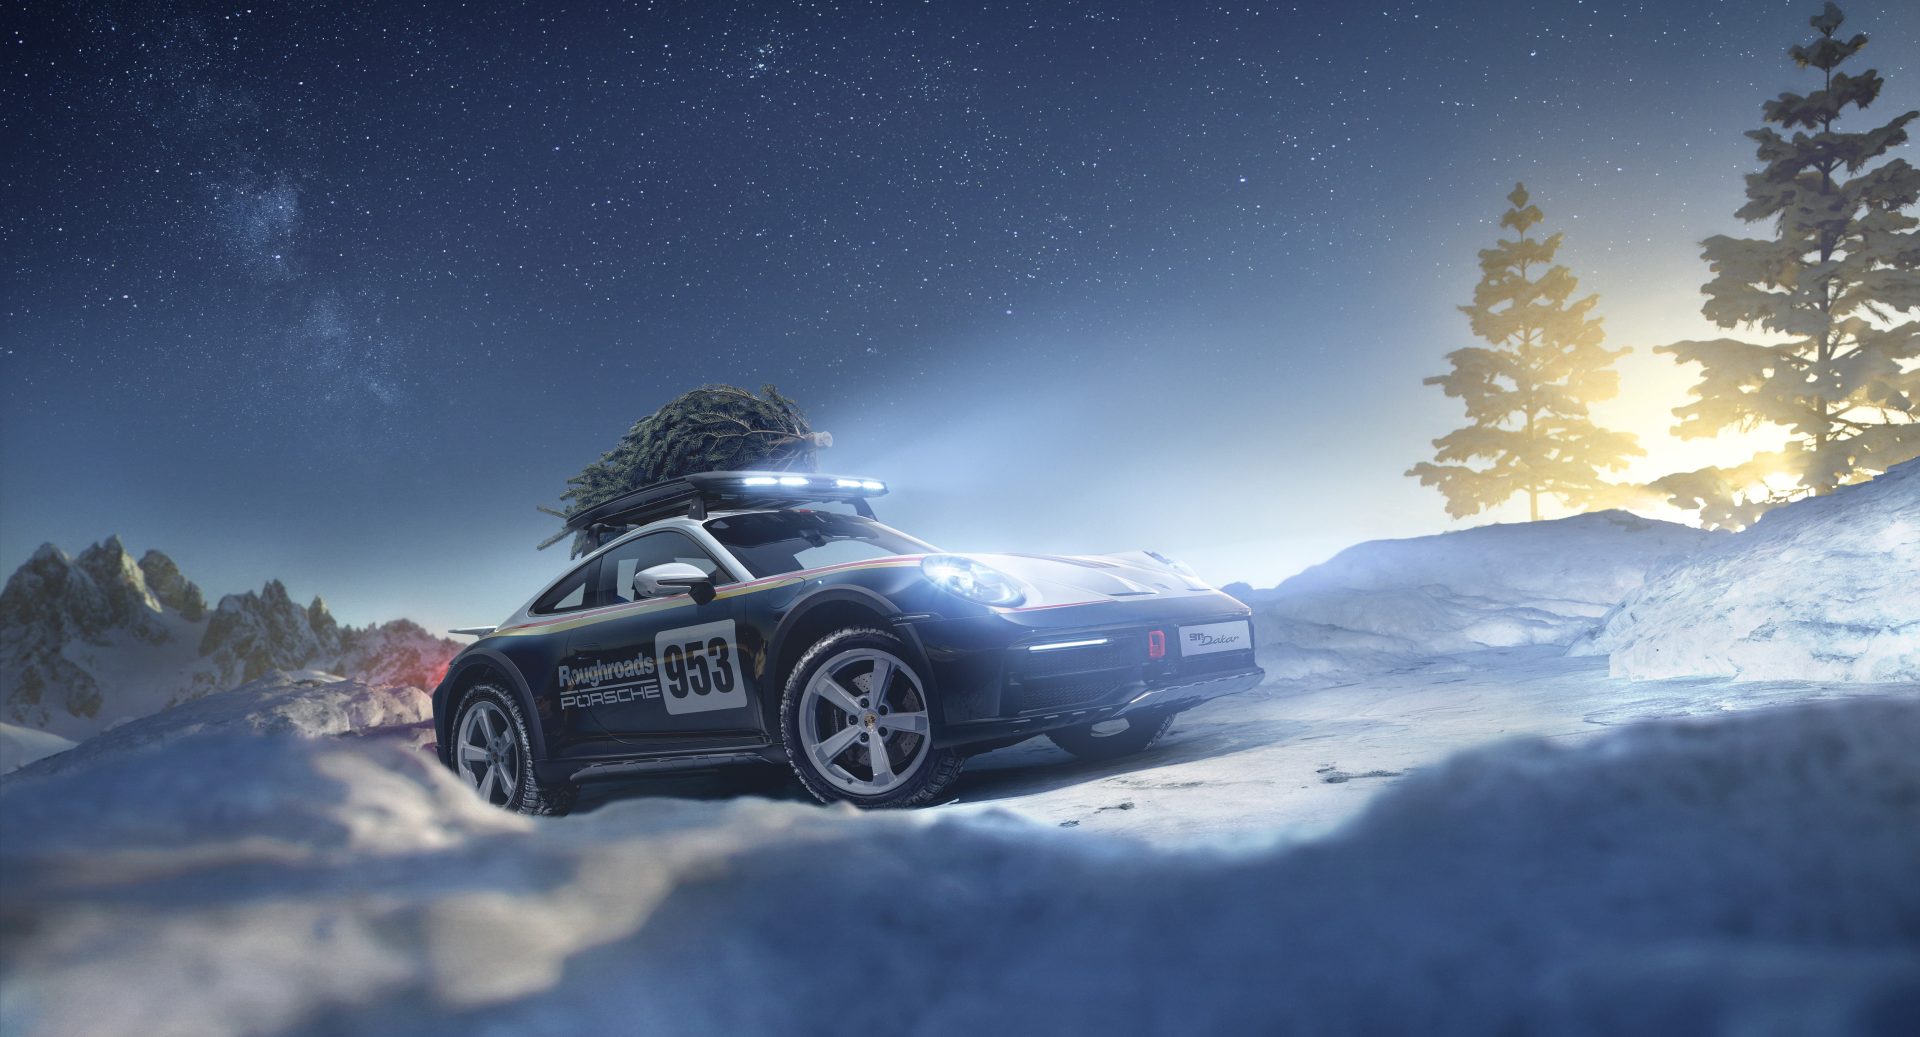 Porsche 911 Dakar jouluisissa talvimaisemissa.